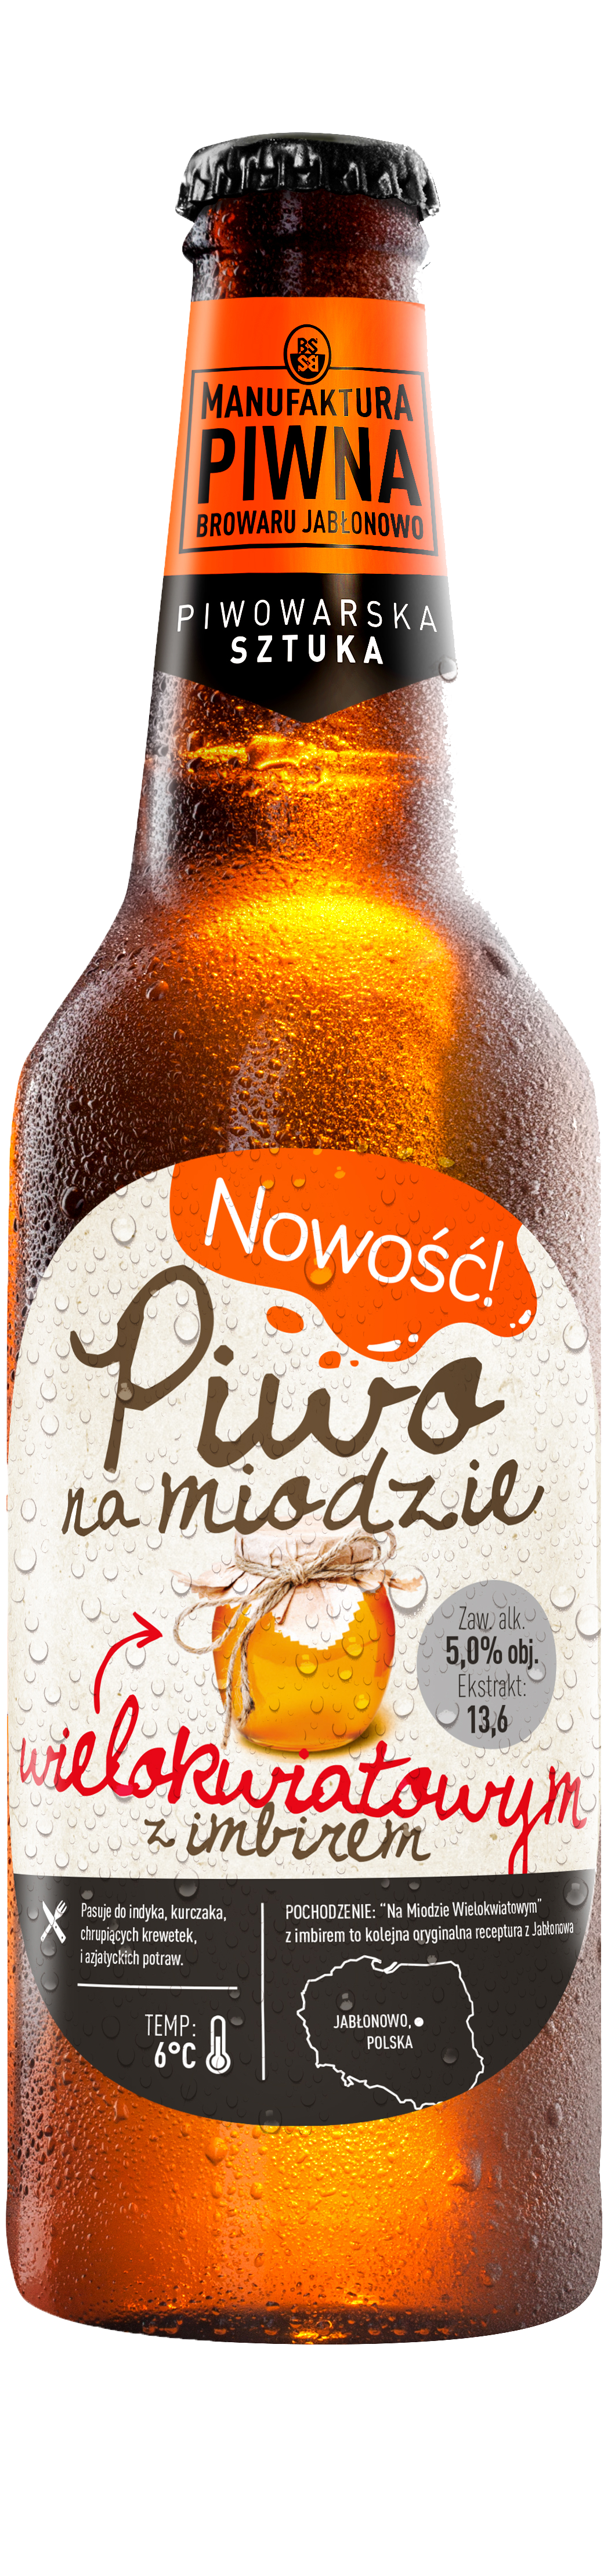 Brewery Jablonowo Piwo Na Miodzie Pivo Honey Beer - Piwo Na Miodzie Gryczanym (2480x4439), Png Download